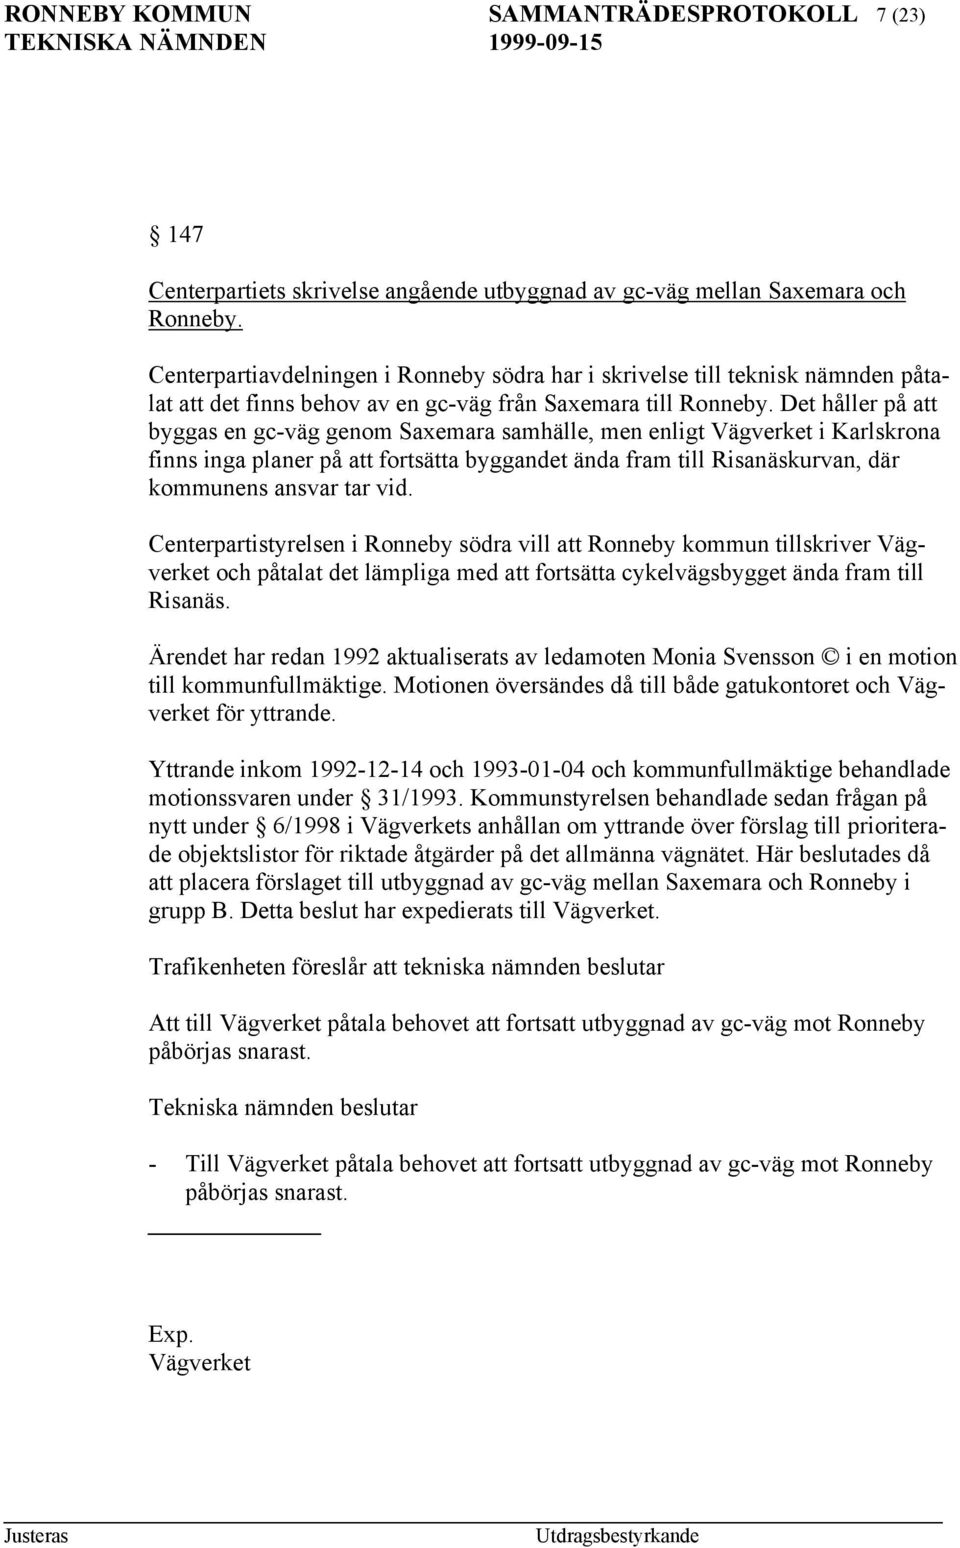 Det håller på att byggas en gc-väg genom Saxemara samhälle, men enligt Vägverket i Karlskrona finns inga planer på att fortsätta byggandet ända fram till Risanäskurvan, där kommunens ansvar tar vid.